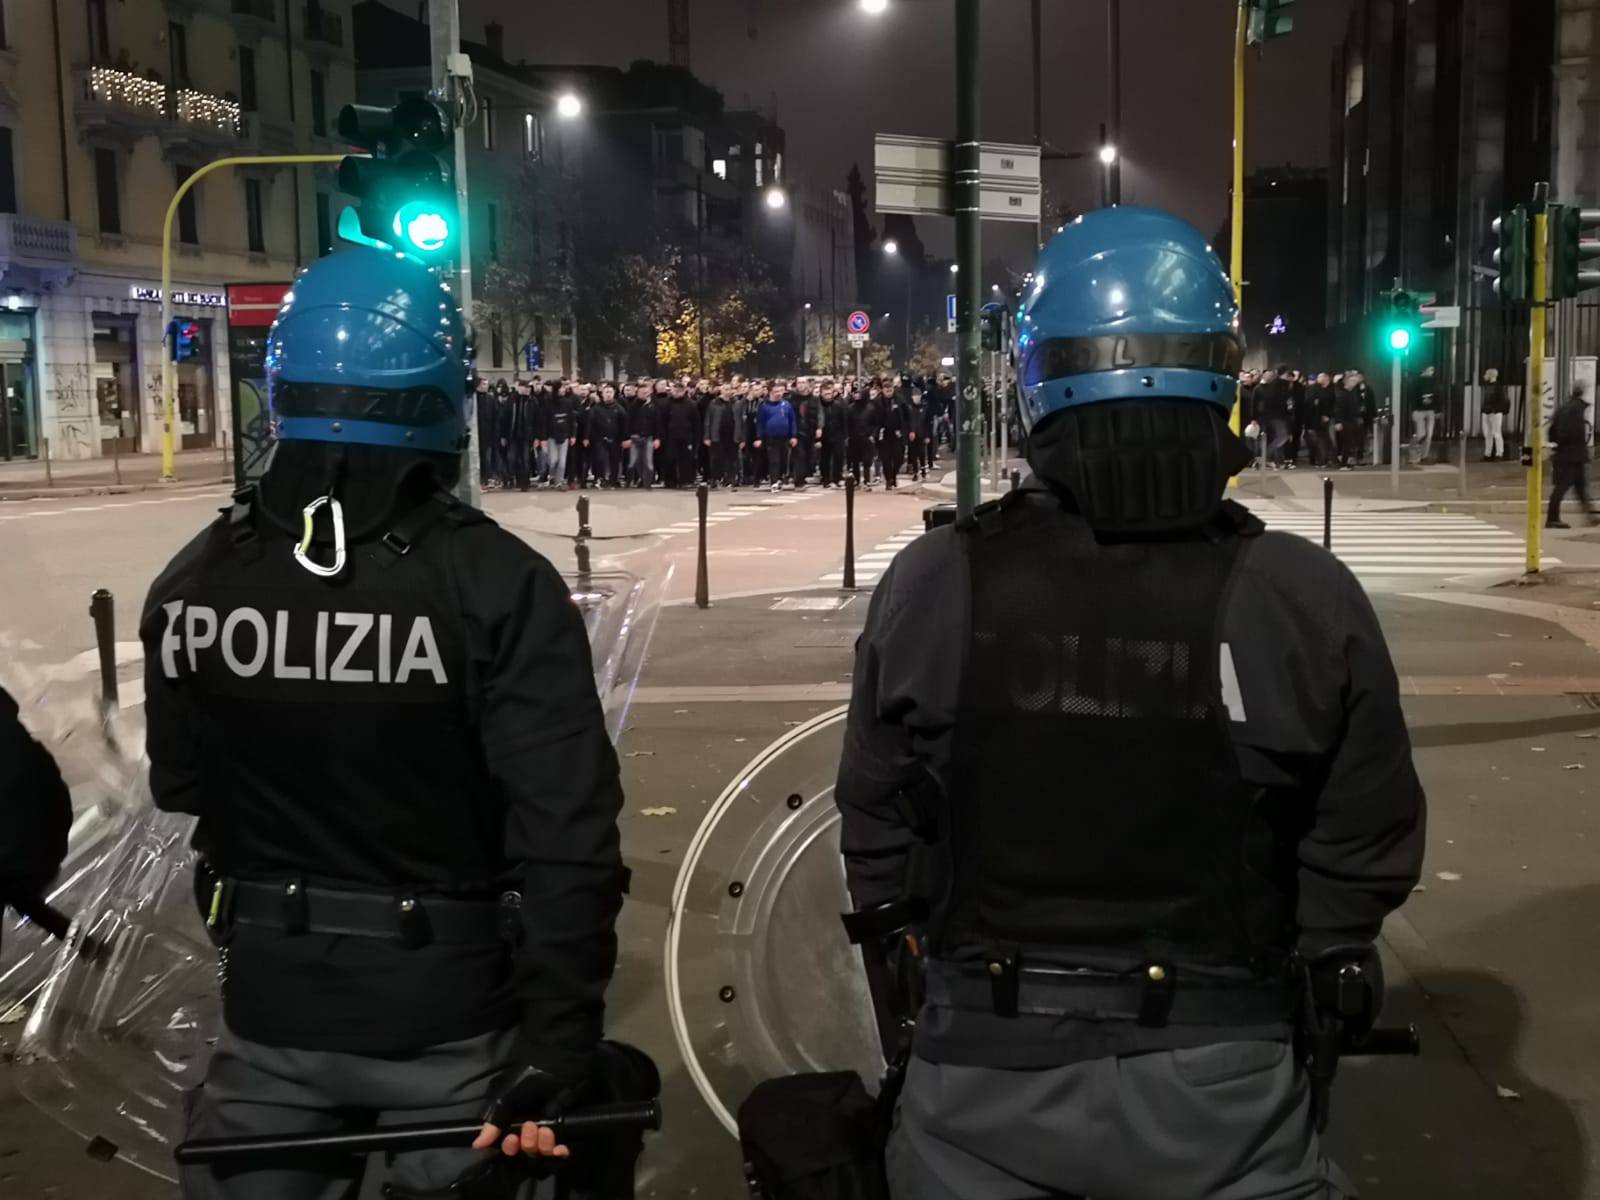 Boysi grmjeli u Milanu: Ti si ponos mog Zagreba grada...